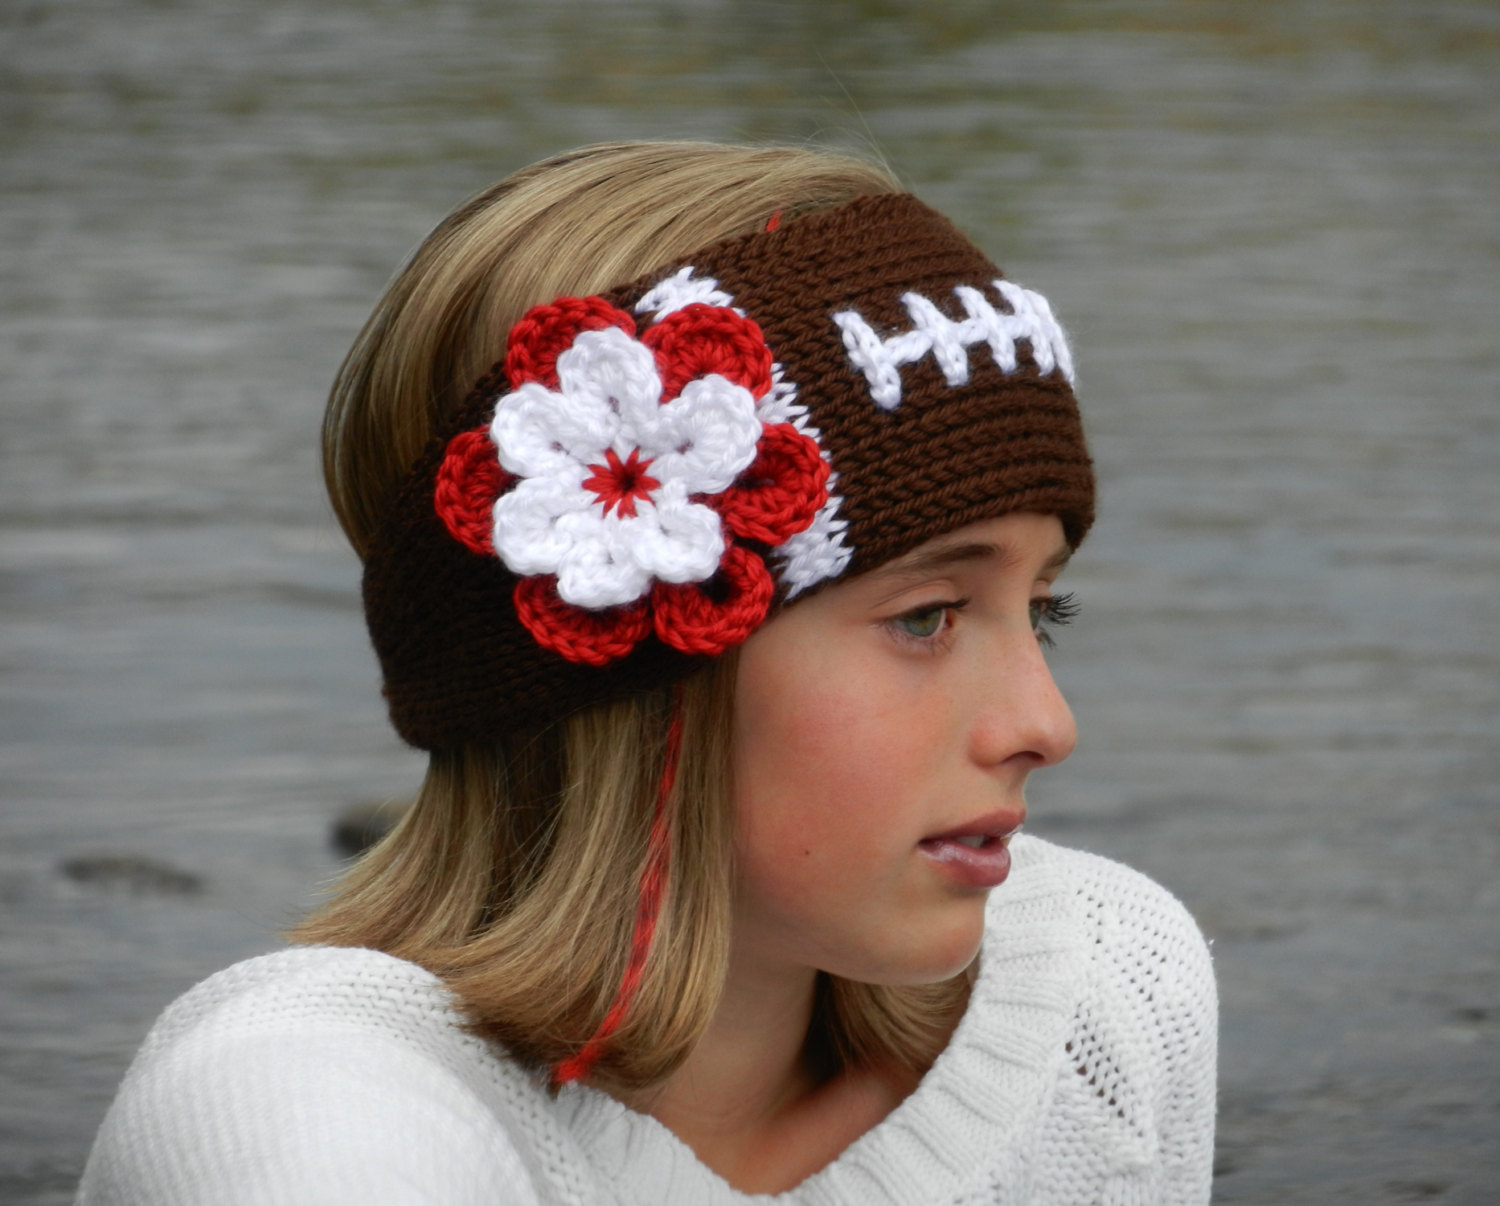 Knit Headband Pattern With Flower Tunisian Knit Look Crochet Football Headband Earwarmer Pattern With Flower Tunisian Crochet Football Headband Pattern Instant Download